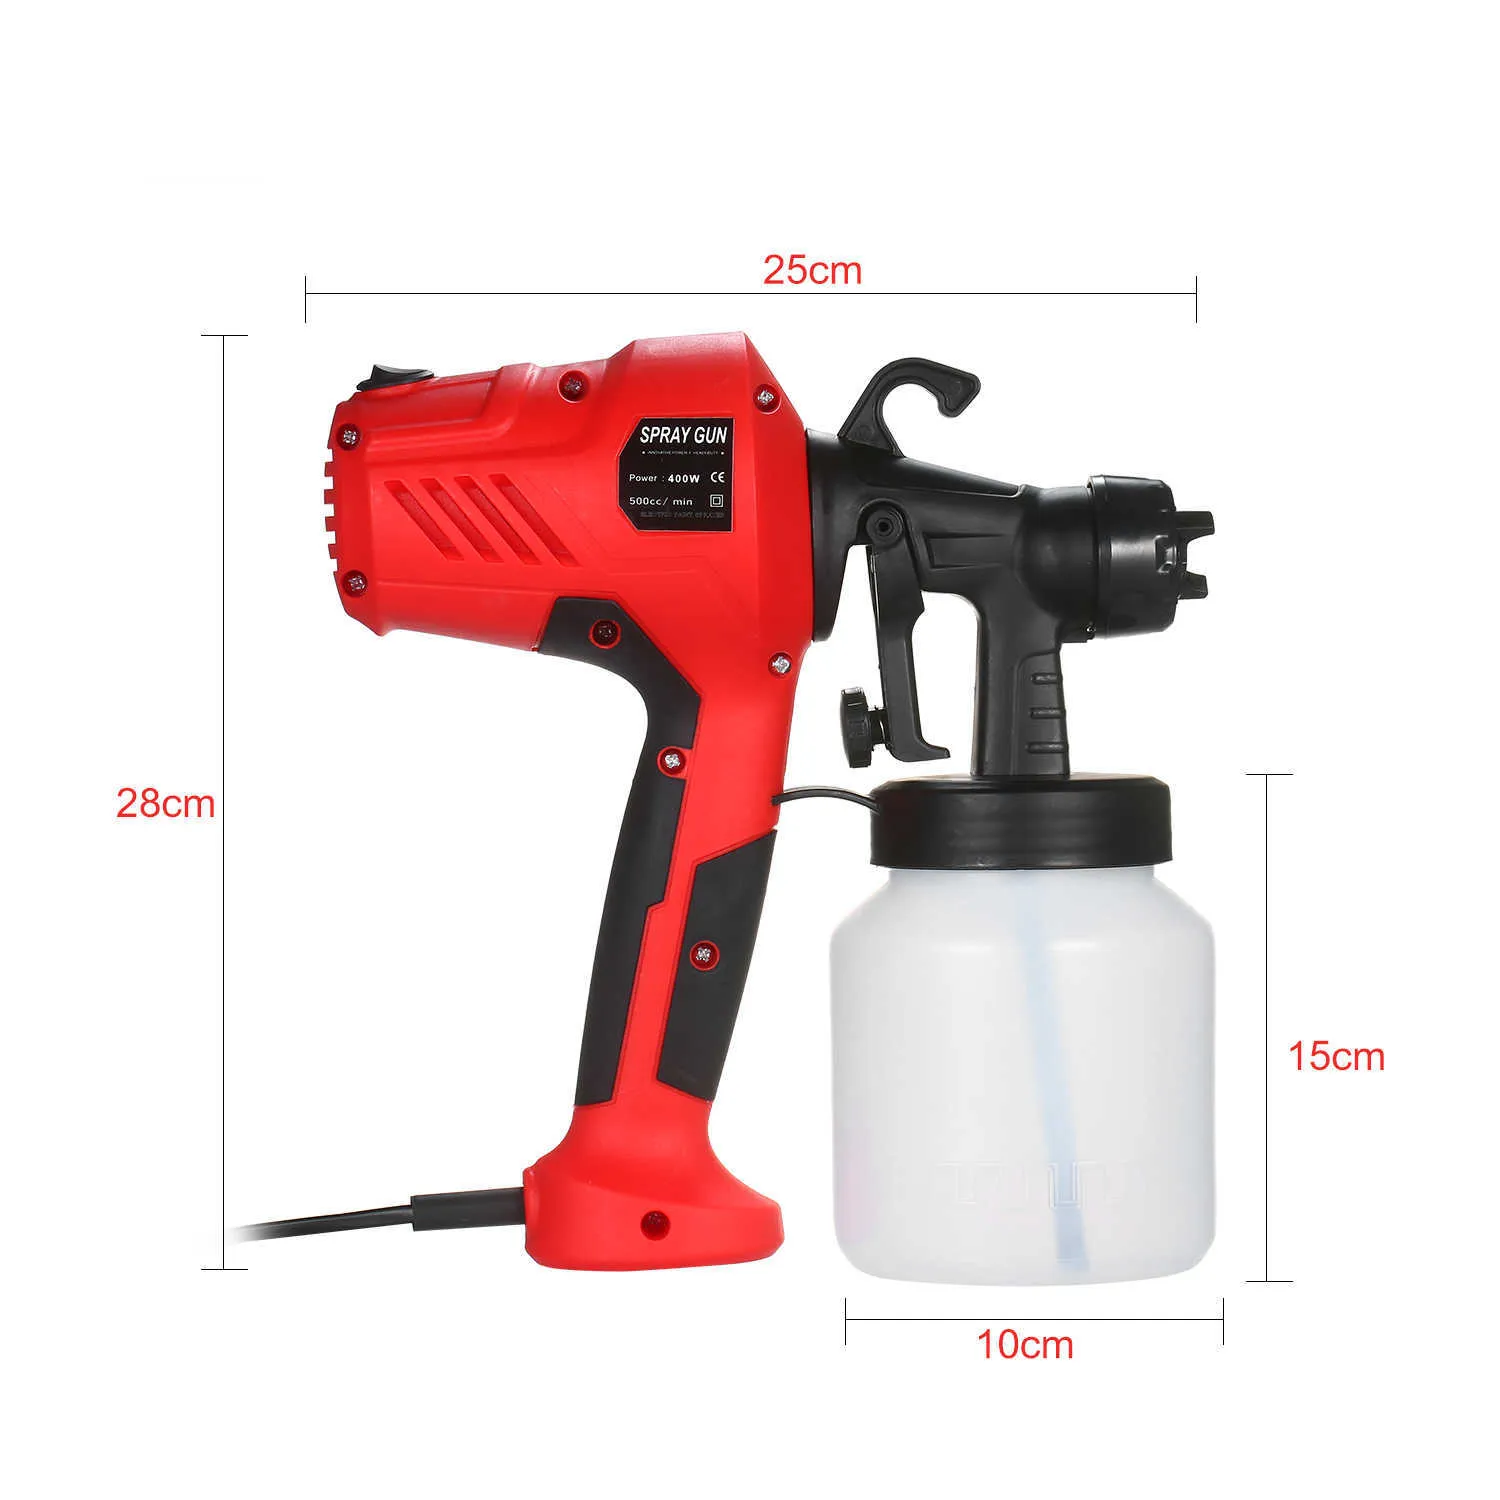 Electric Paint Sprayler Wyjmowany pod wysokim ciśnieniem pistoletu rozpylającym regulację przepływu powietrza i przepływu farby Euuk Airbrush 2107194259992